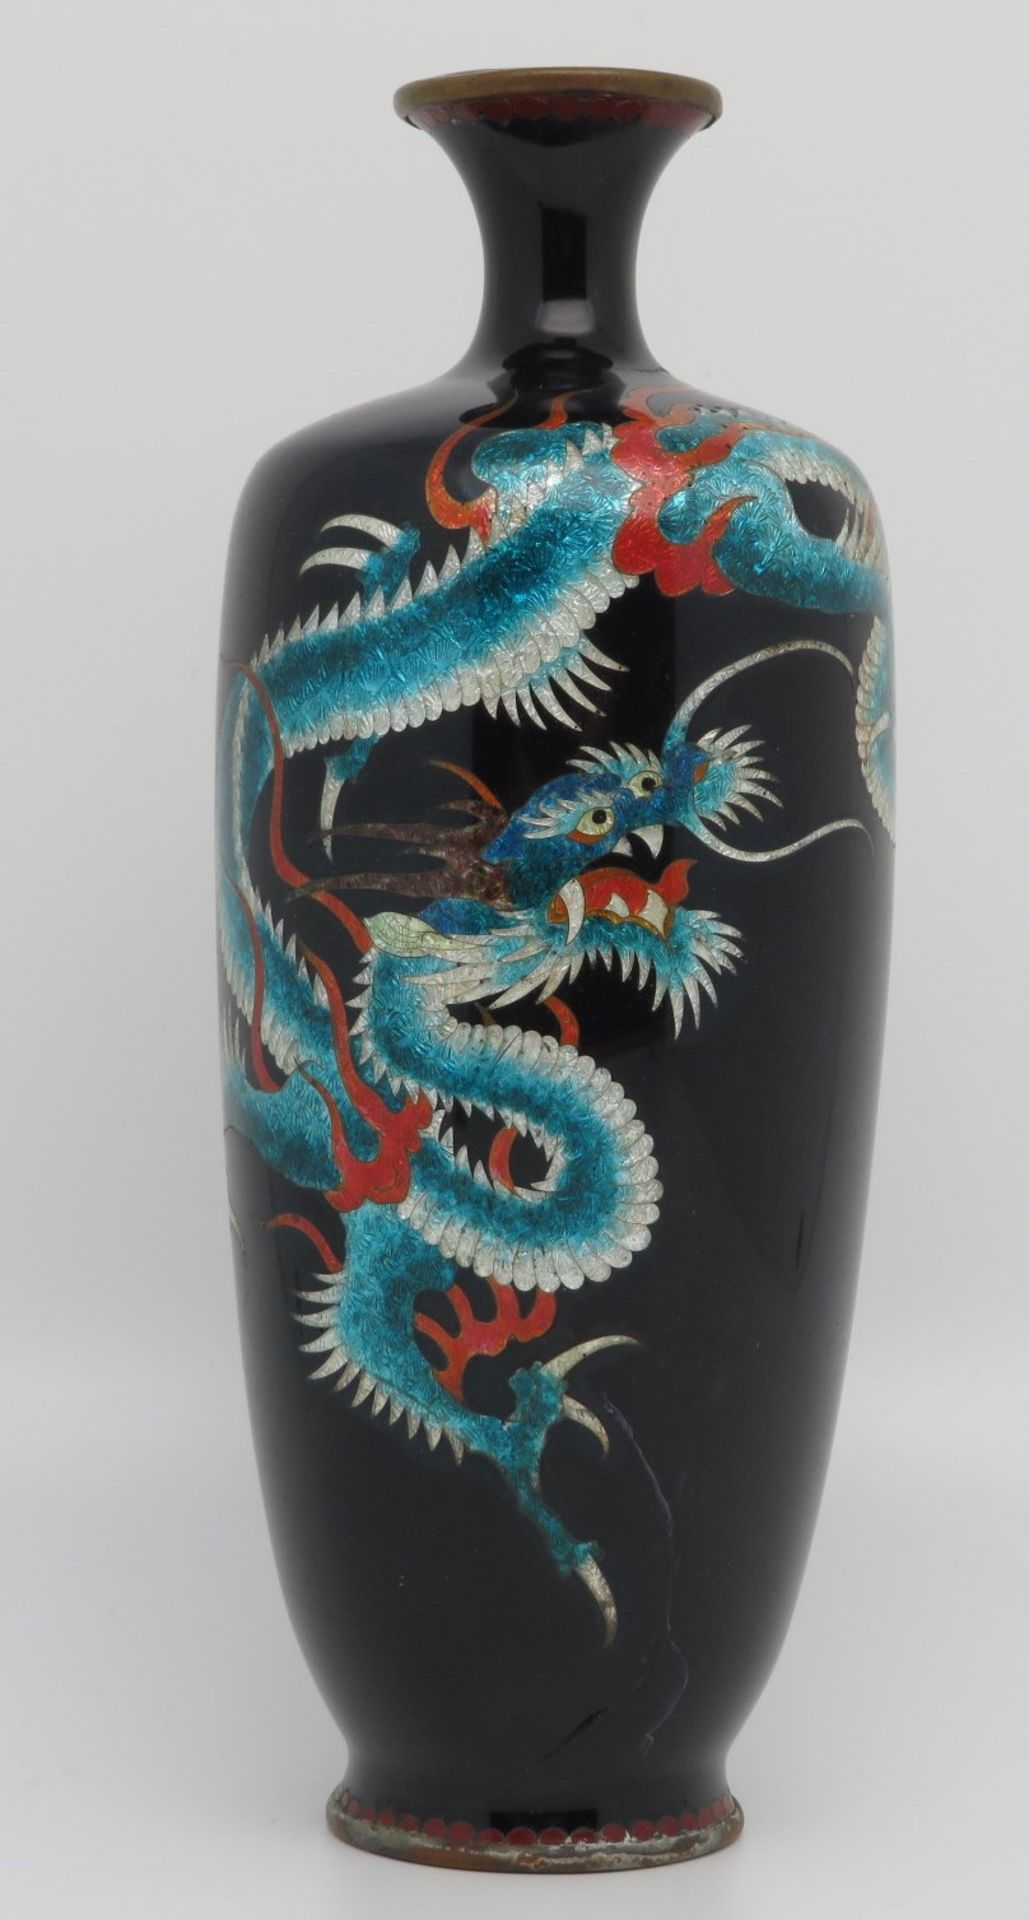 Cloisonné Vase, Japan, 1. Hälfte 20. Jahrhundert, farbiger Zellenschmelz mit umlaufendem Drachendek